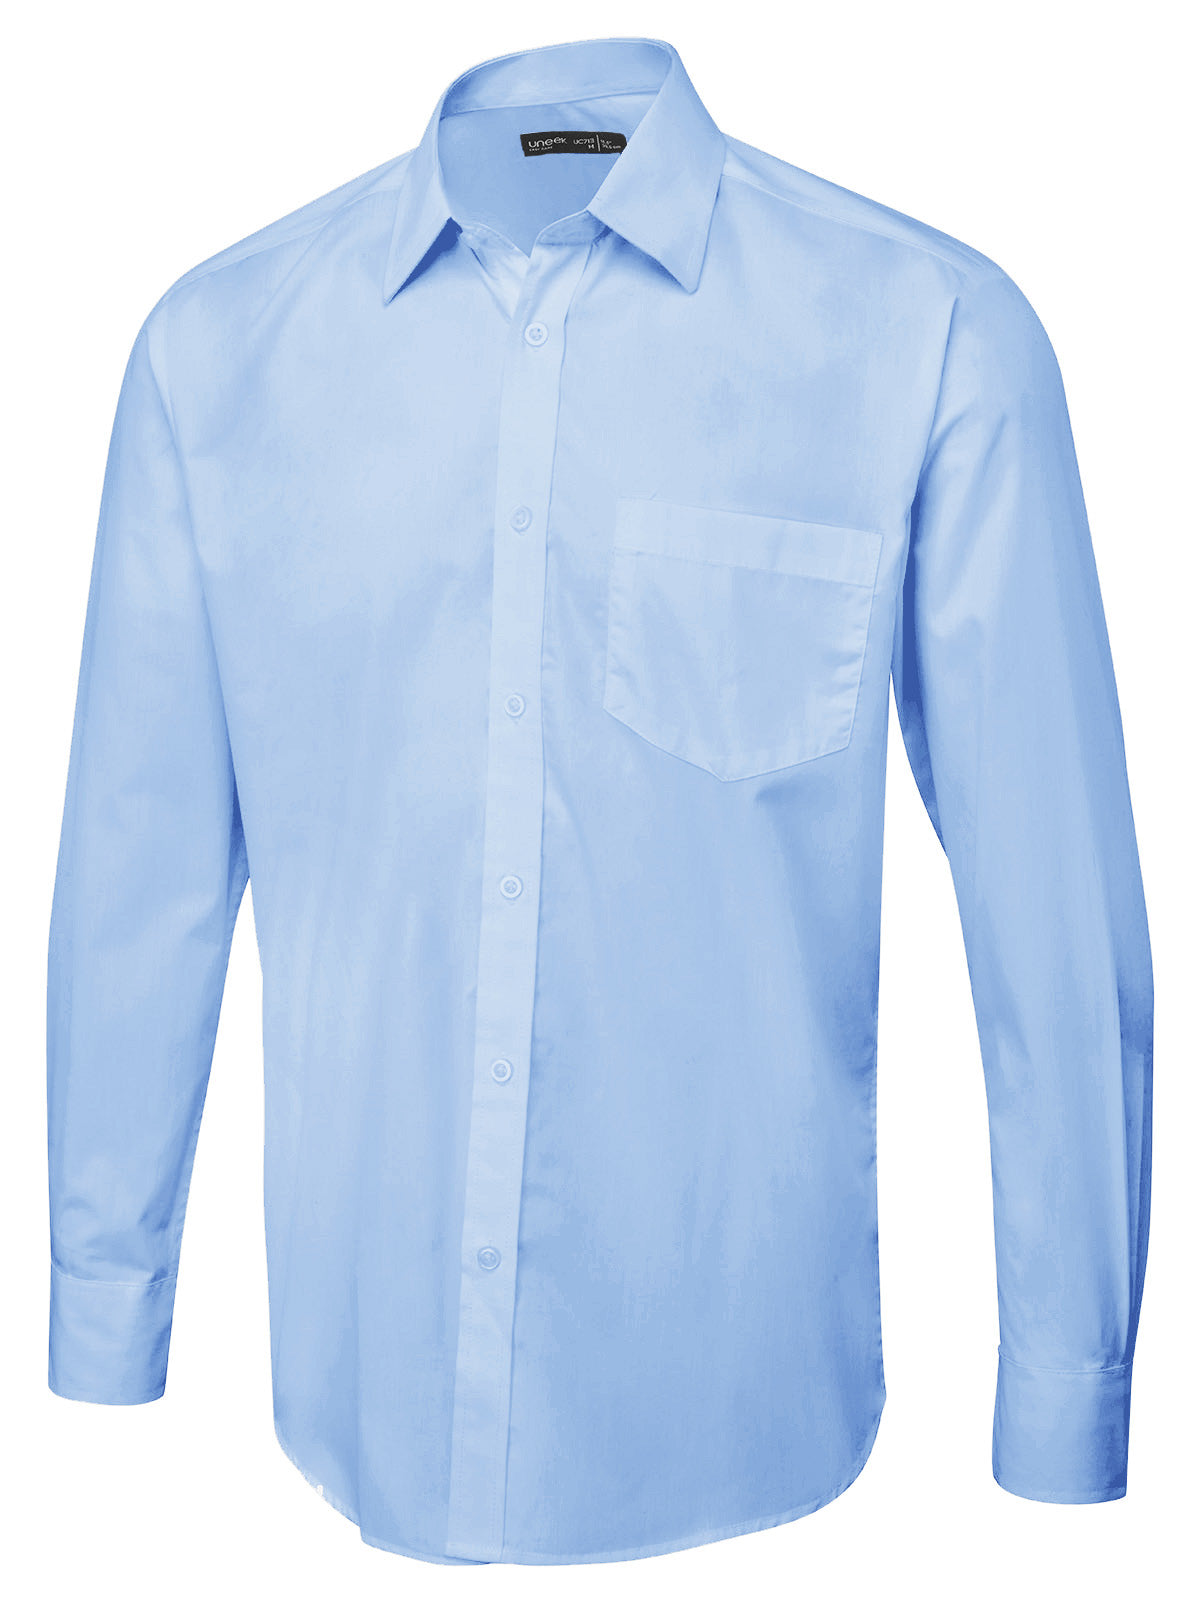 Uneek Men's Long Sleeve Poplin Shirt UC713 - Light Blue